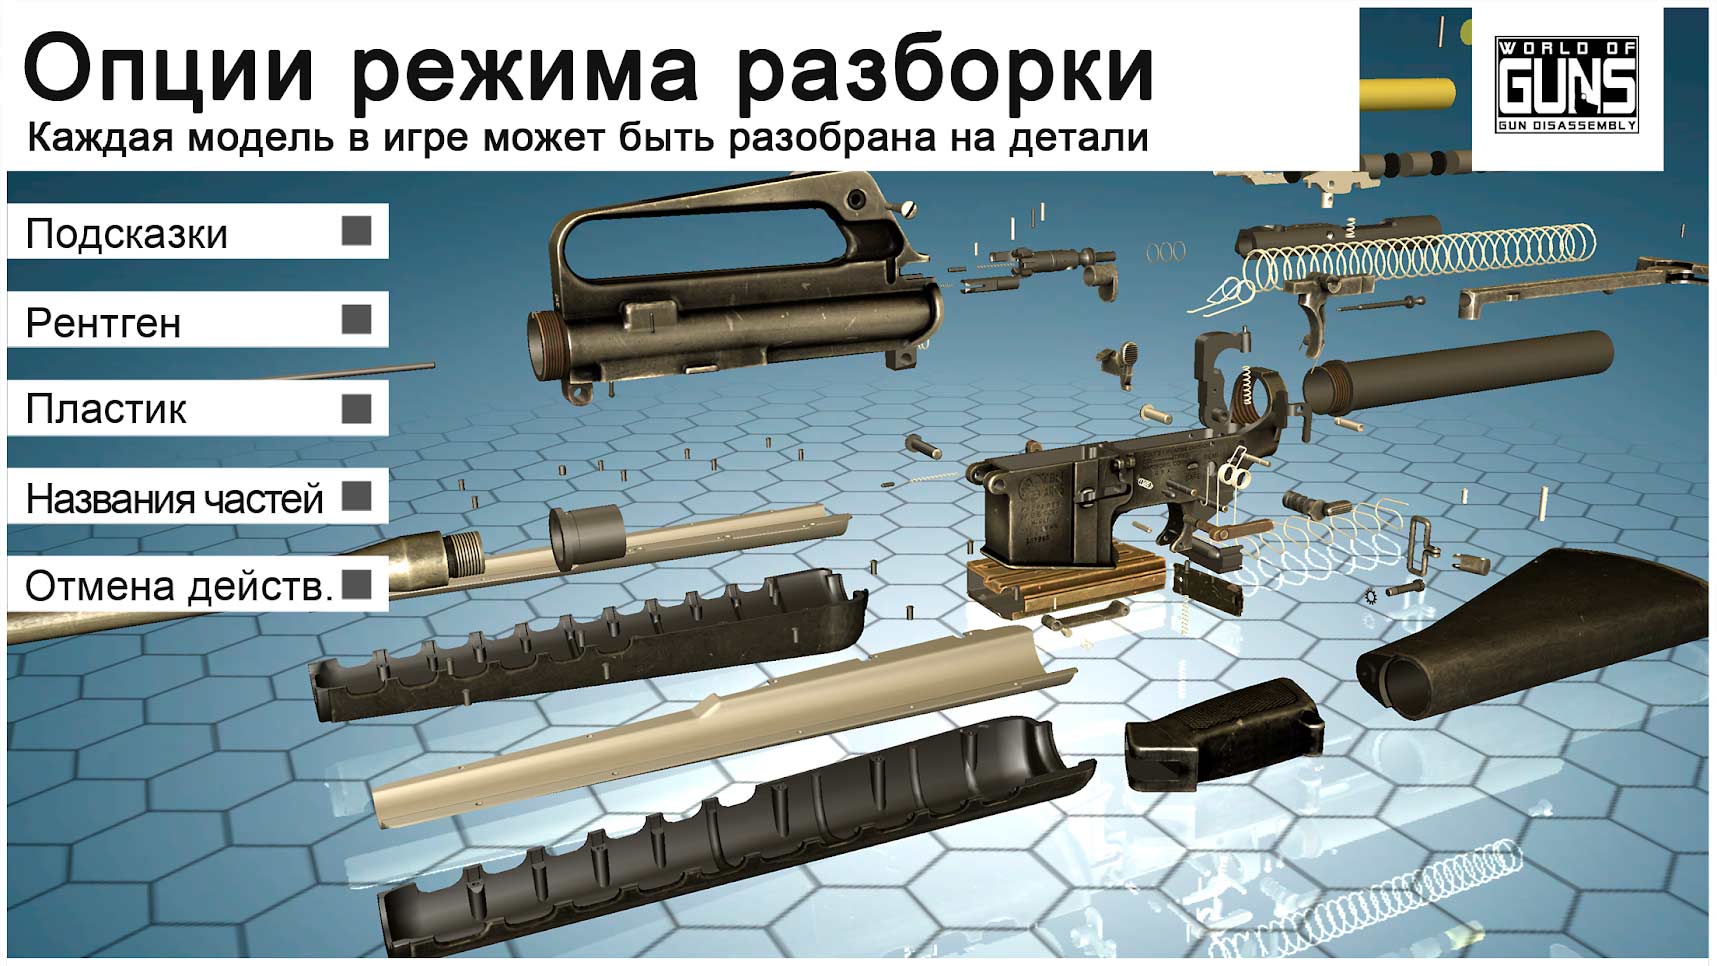 world of guns gun disassembly apk mod